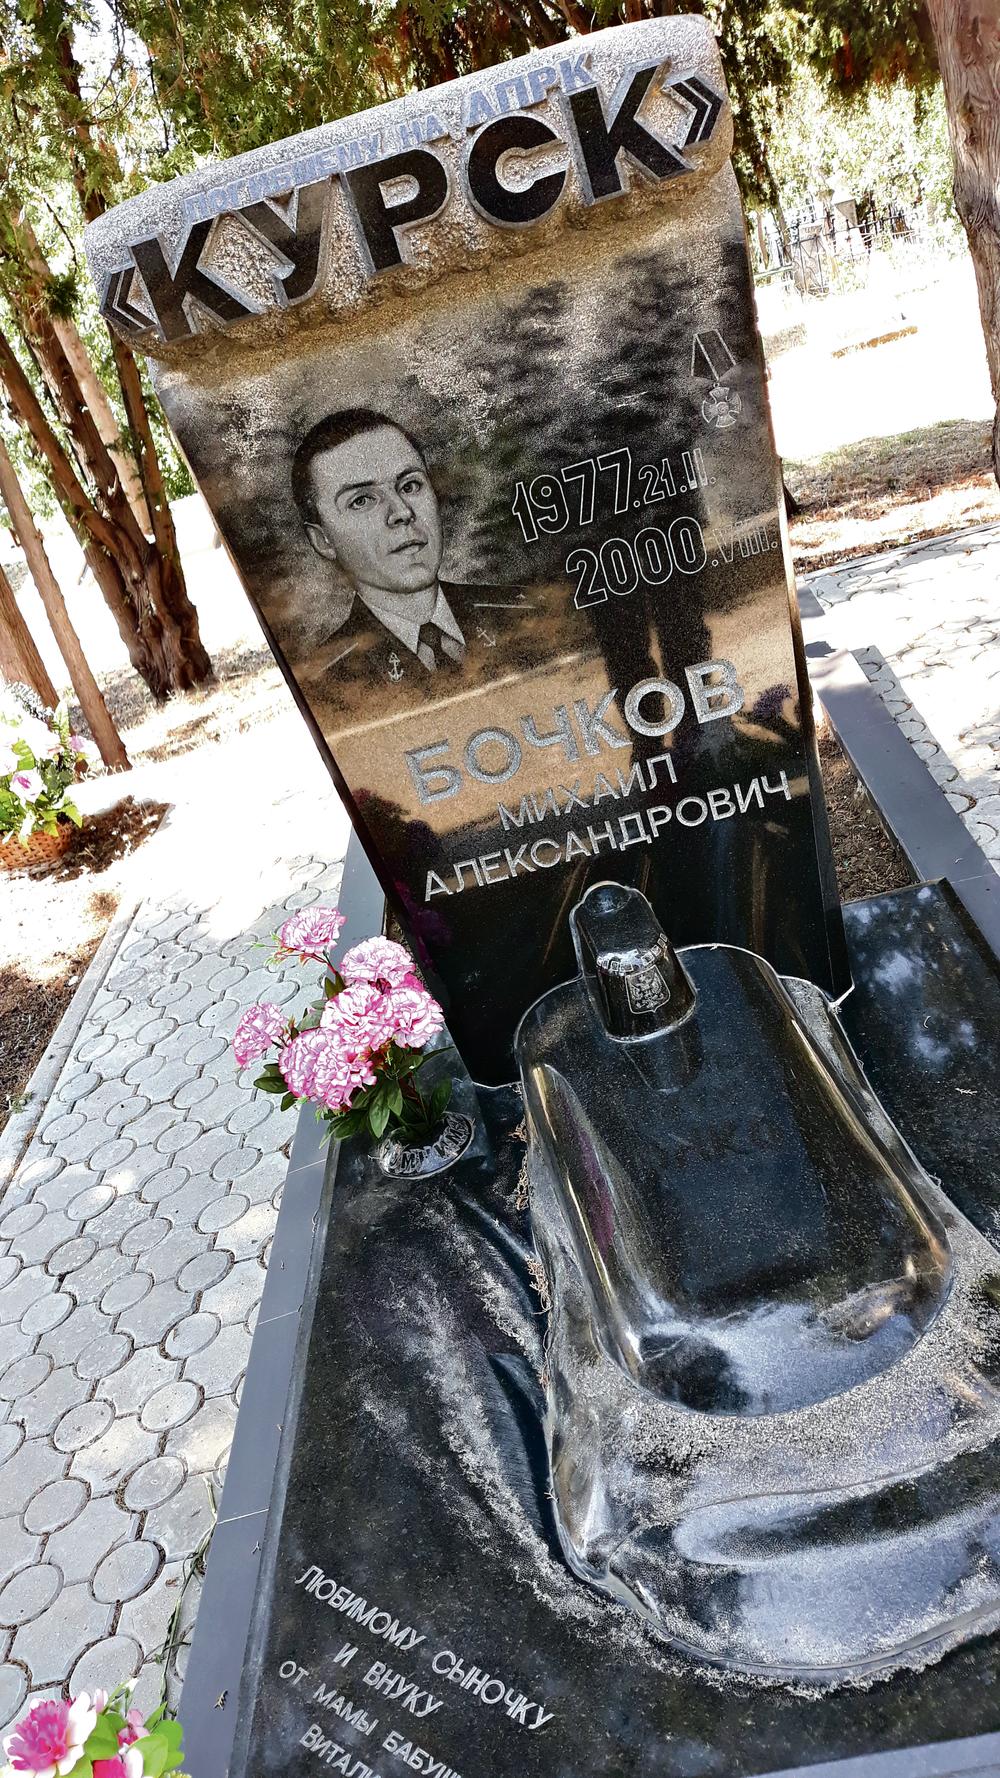 Spomenik kao podmornica Ovde počivaju Mihail Bočkov i Mihail Olegovič iz „Kurska“